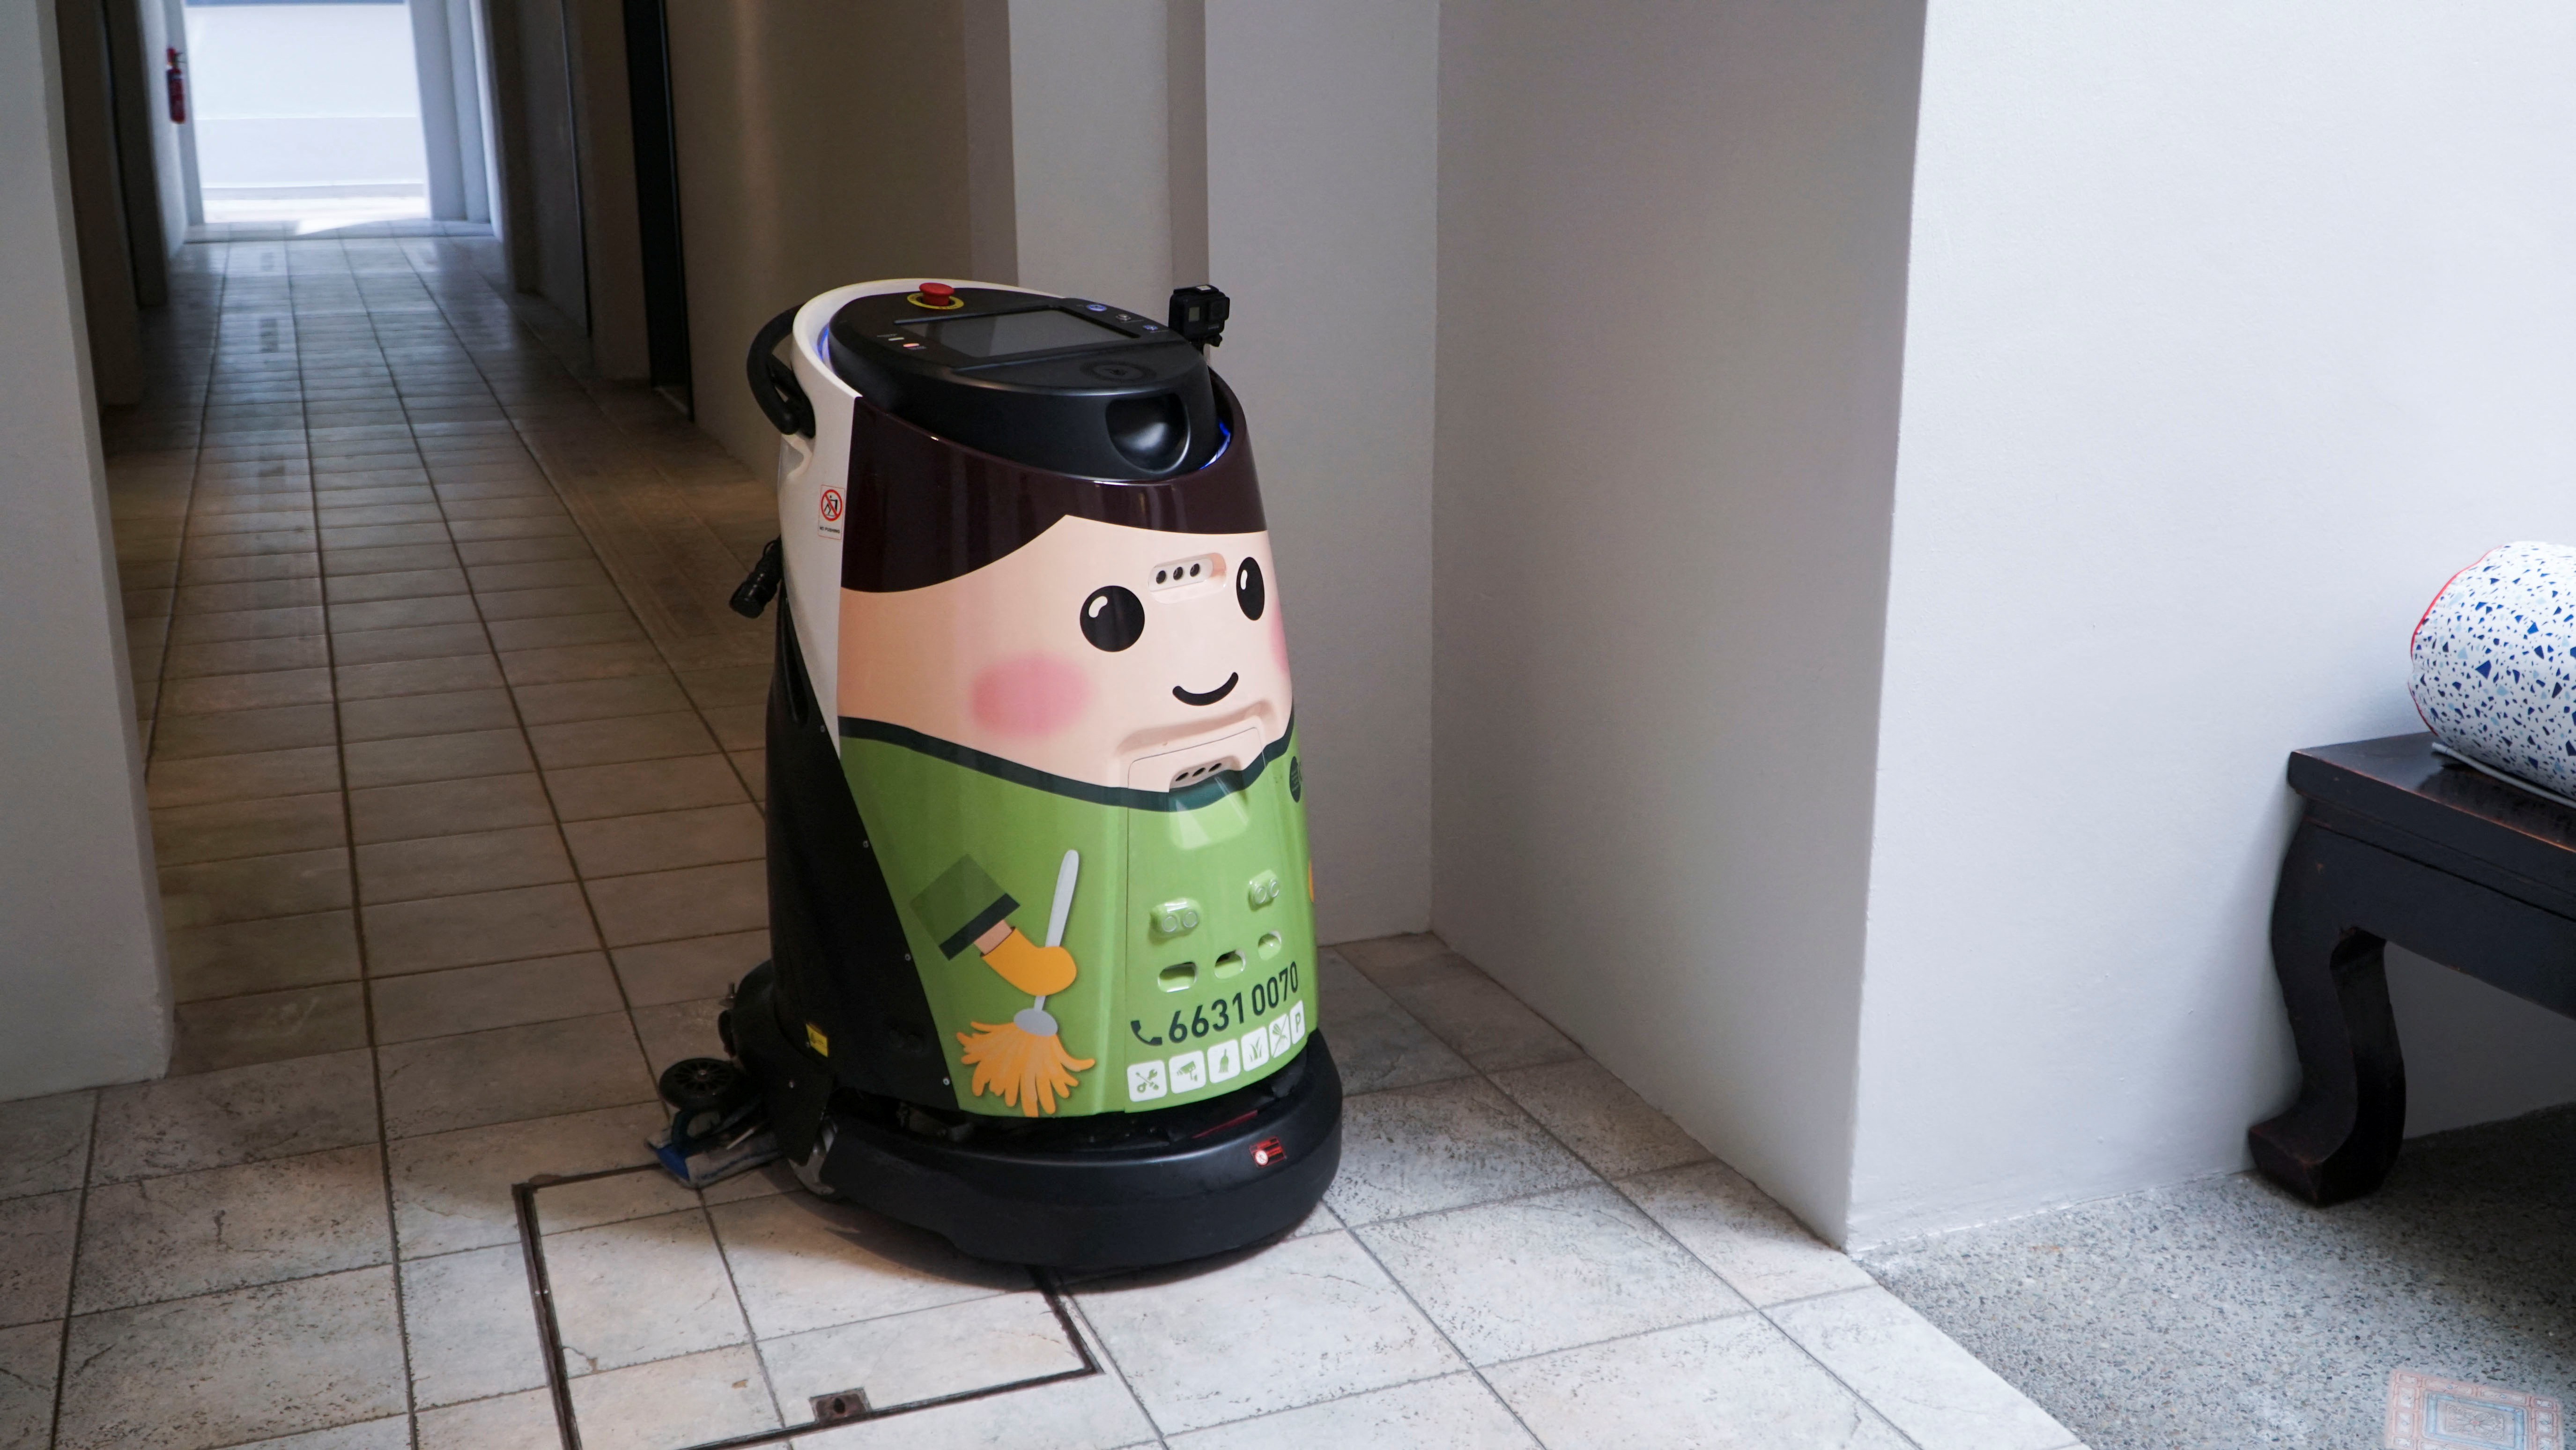 Робот-уборщик, используемый группой LHN, управляющей сетью отелей Coliwoo, внутри отеля в Сингапуре.